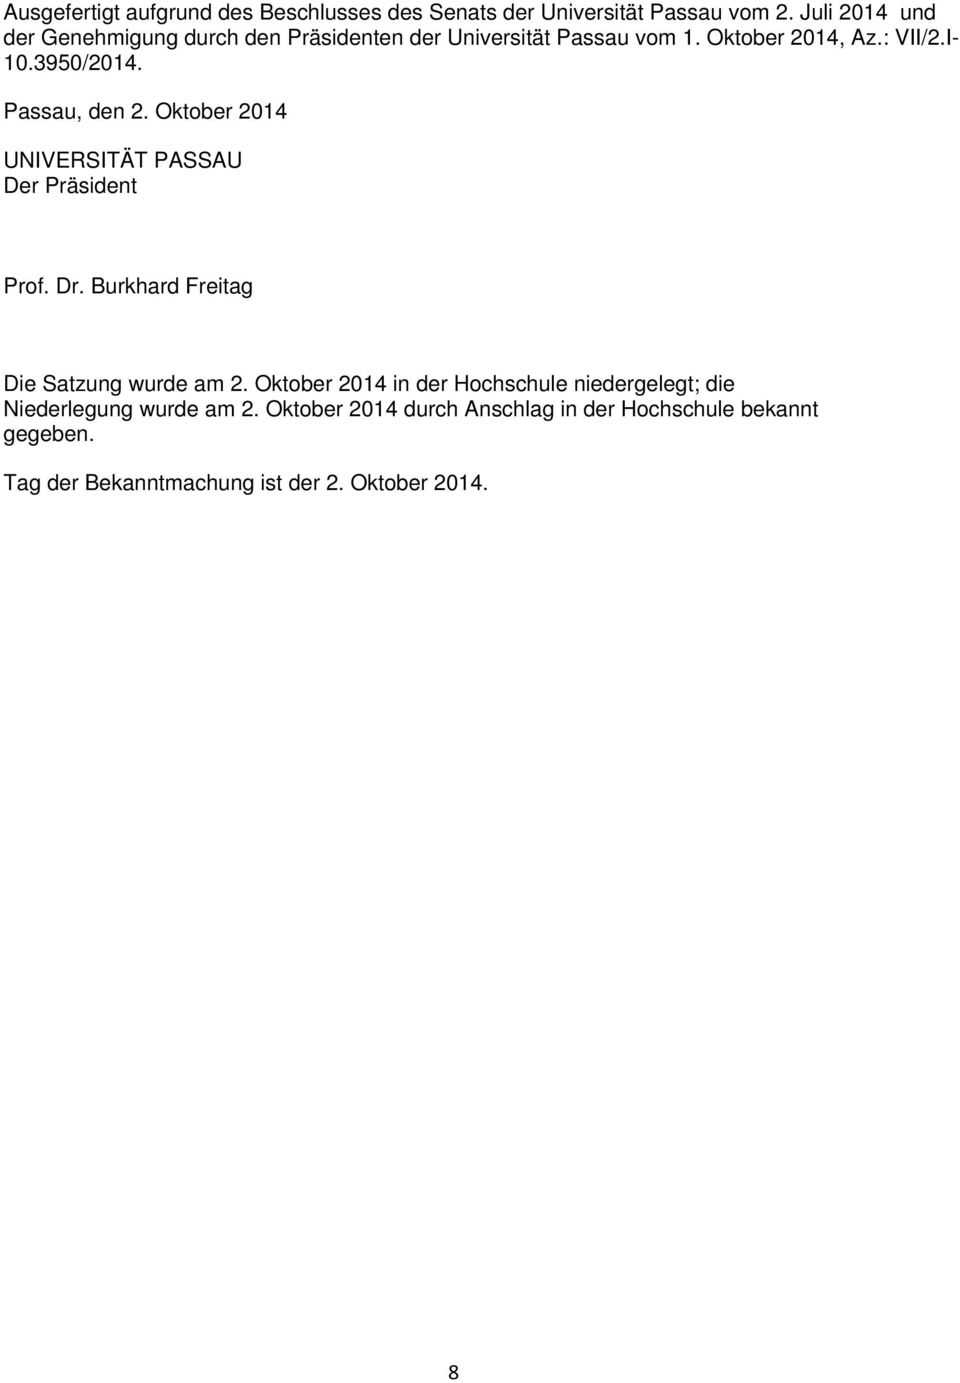 Passau, den 2. Oktober 2014 UNIVERSITÄT PASSAU Der Präsident Prof. Dr. Burkhard Freitag Die Satzung wurde am 2.